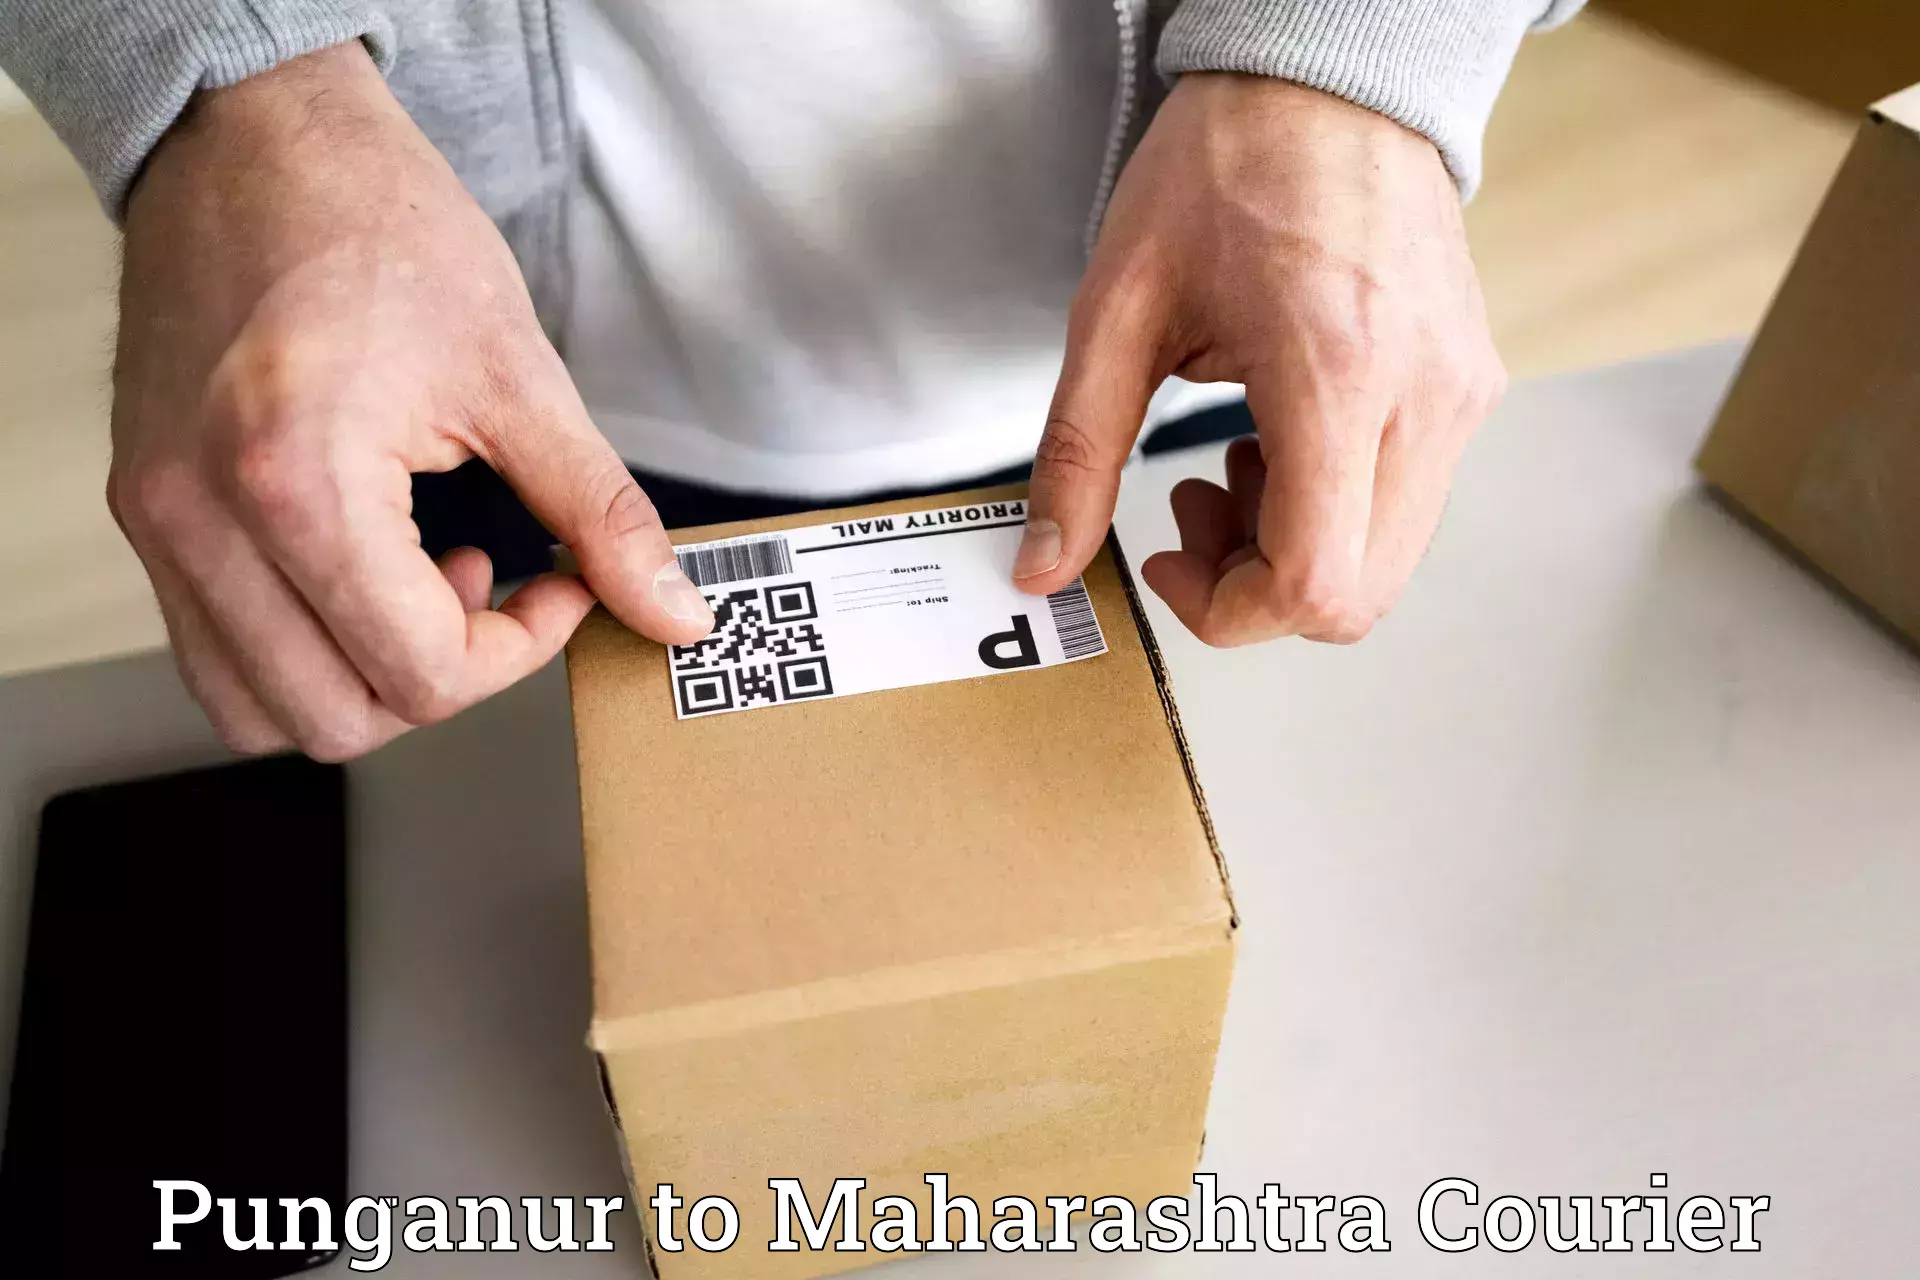 Express package handling Punganur to Maharashtra